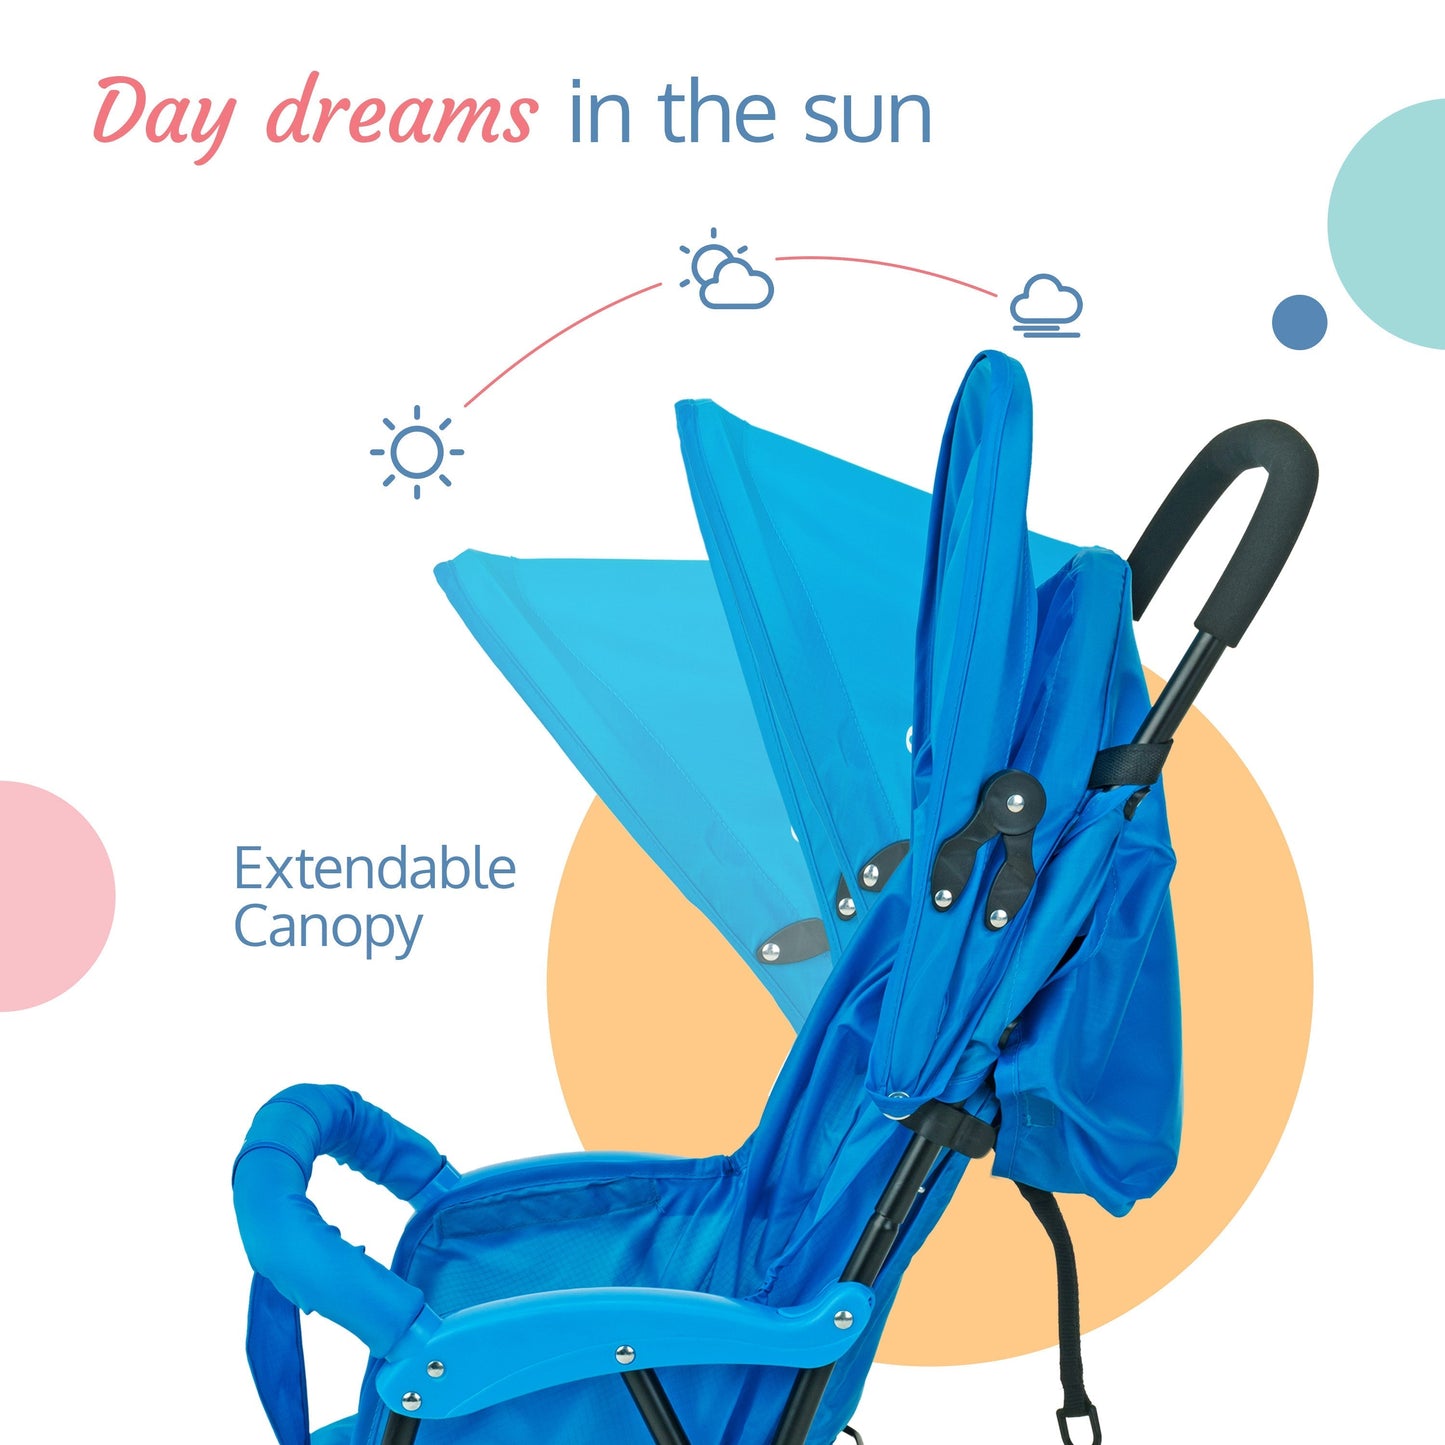 Apollo Baby Stroller - Blue